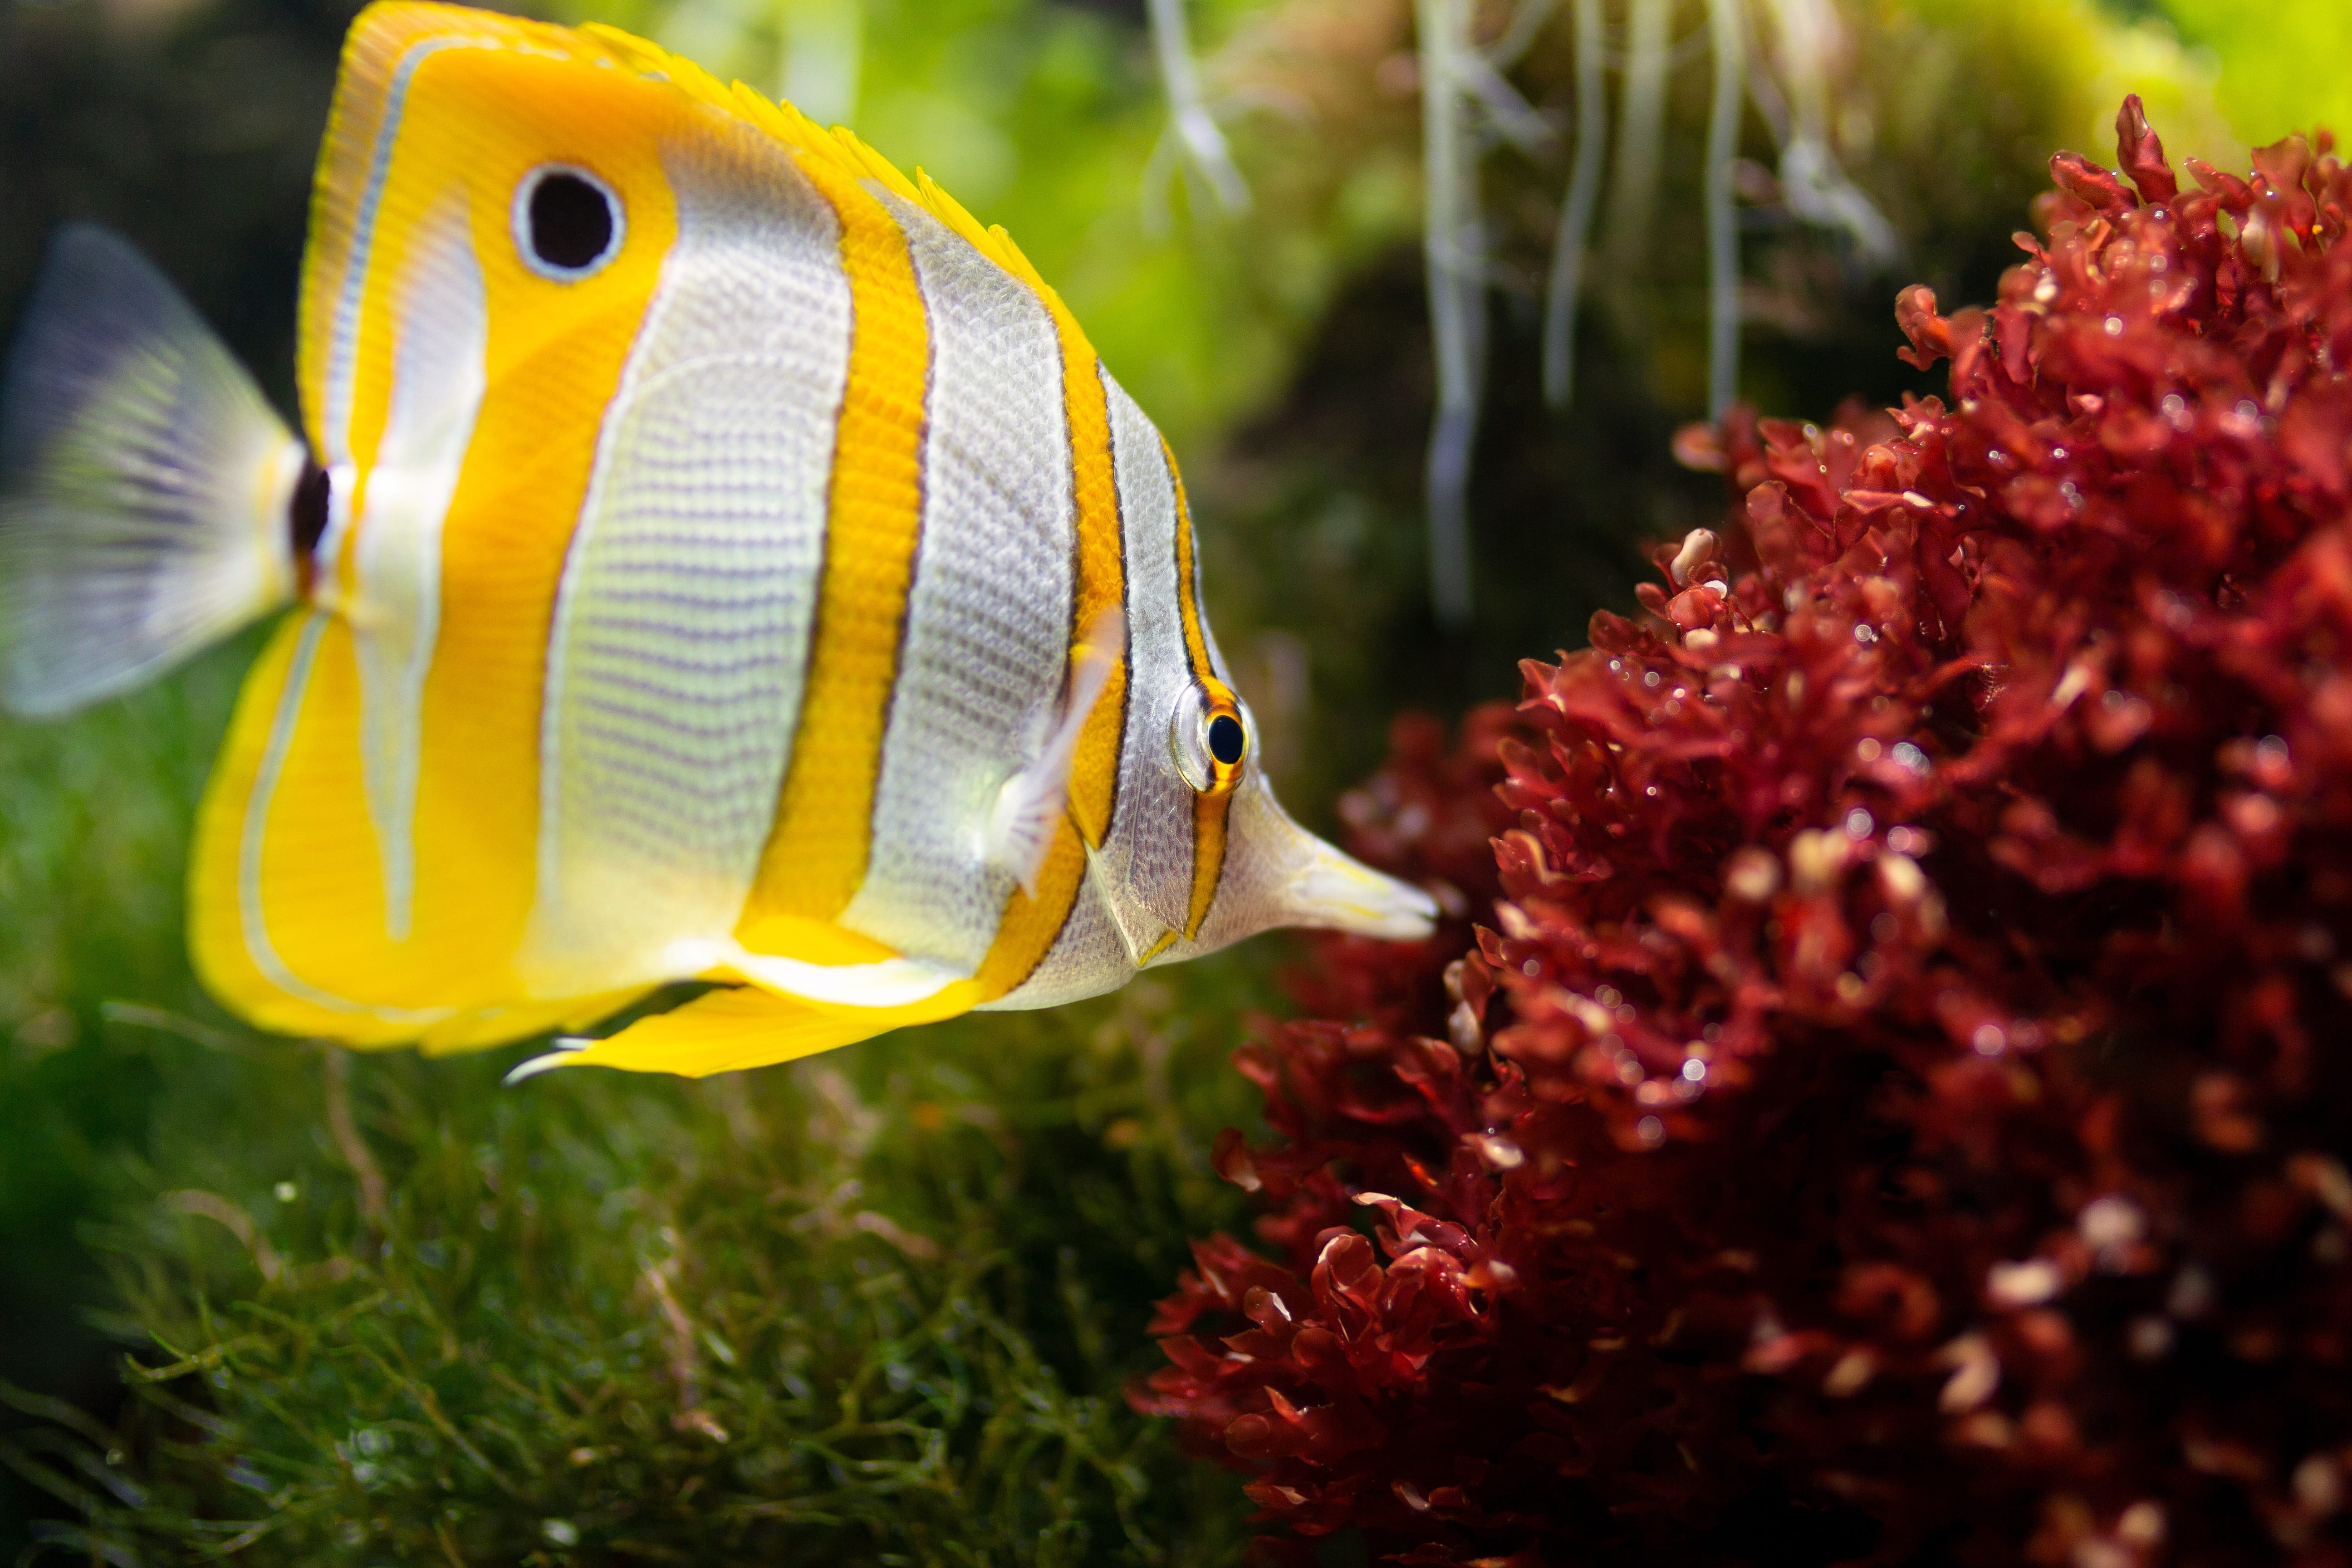 white and yellow striped fish close-up photo, aquarium, underwater